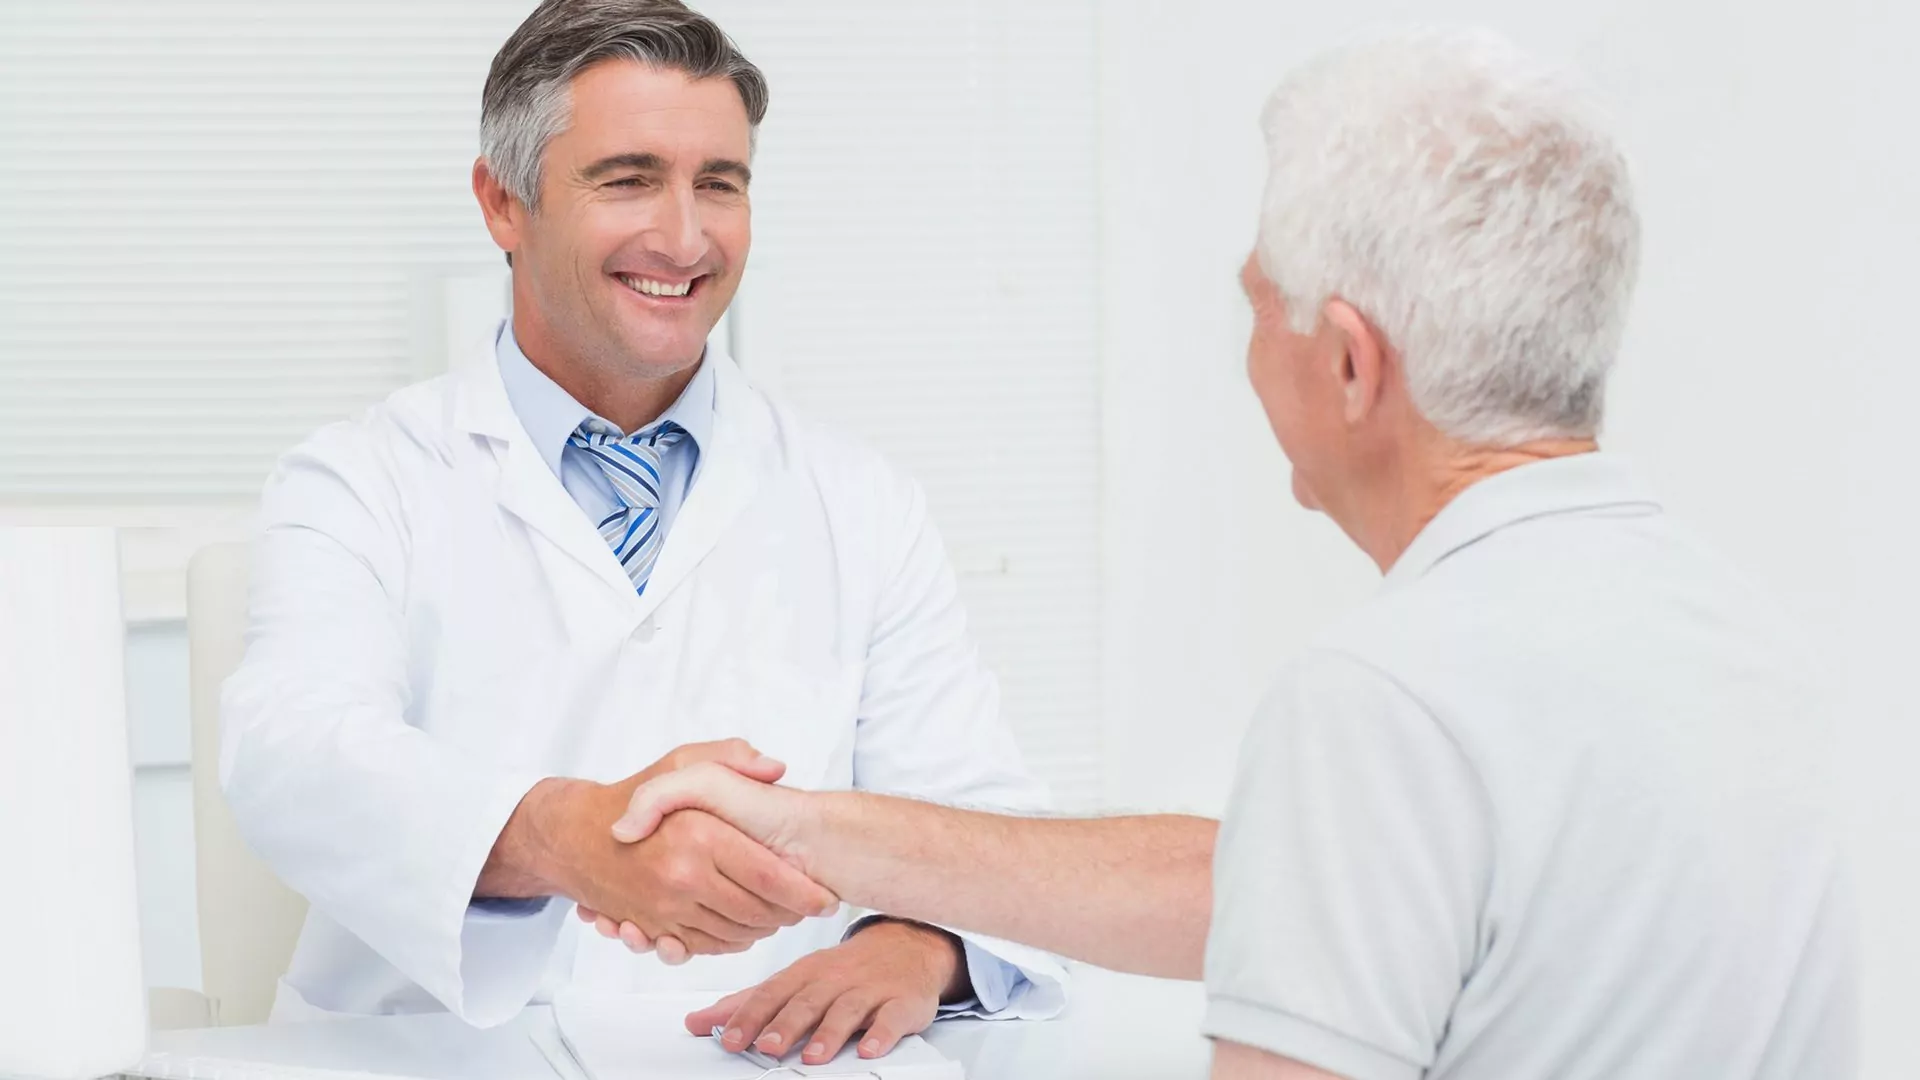 Das Gespräch mit dem Arzt ist der erste Schritt beim erfolgreichen Bentragen einer Kur- oder ggf. AHB-Maßnahme.